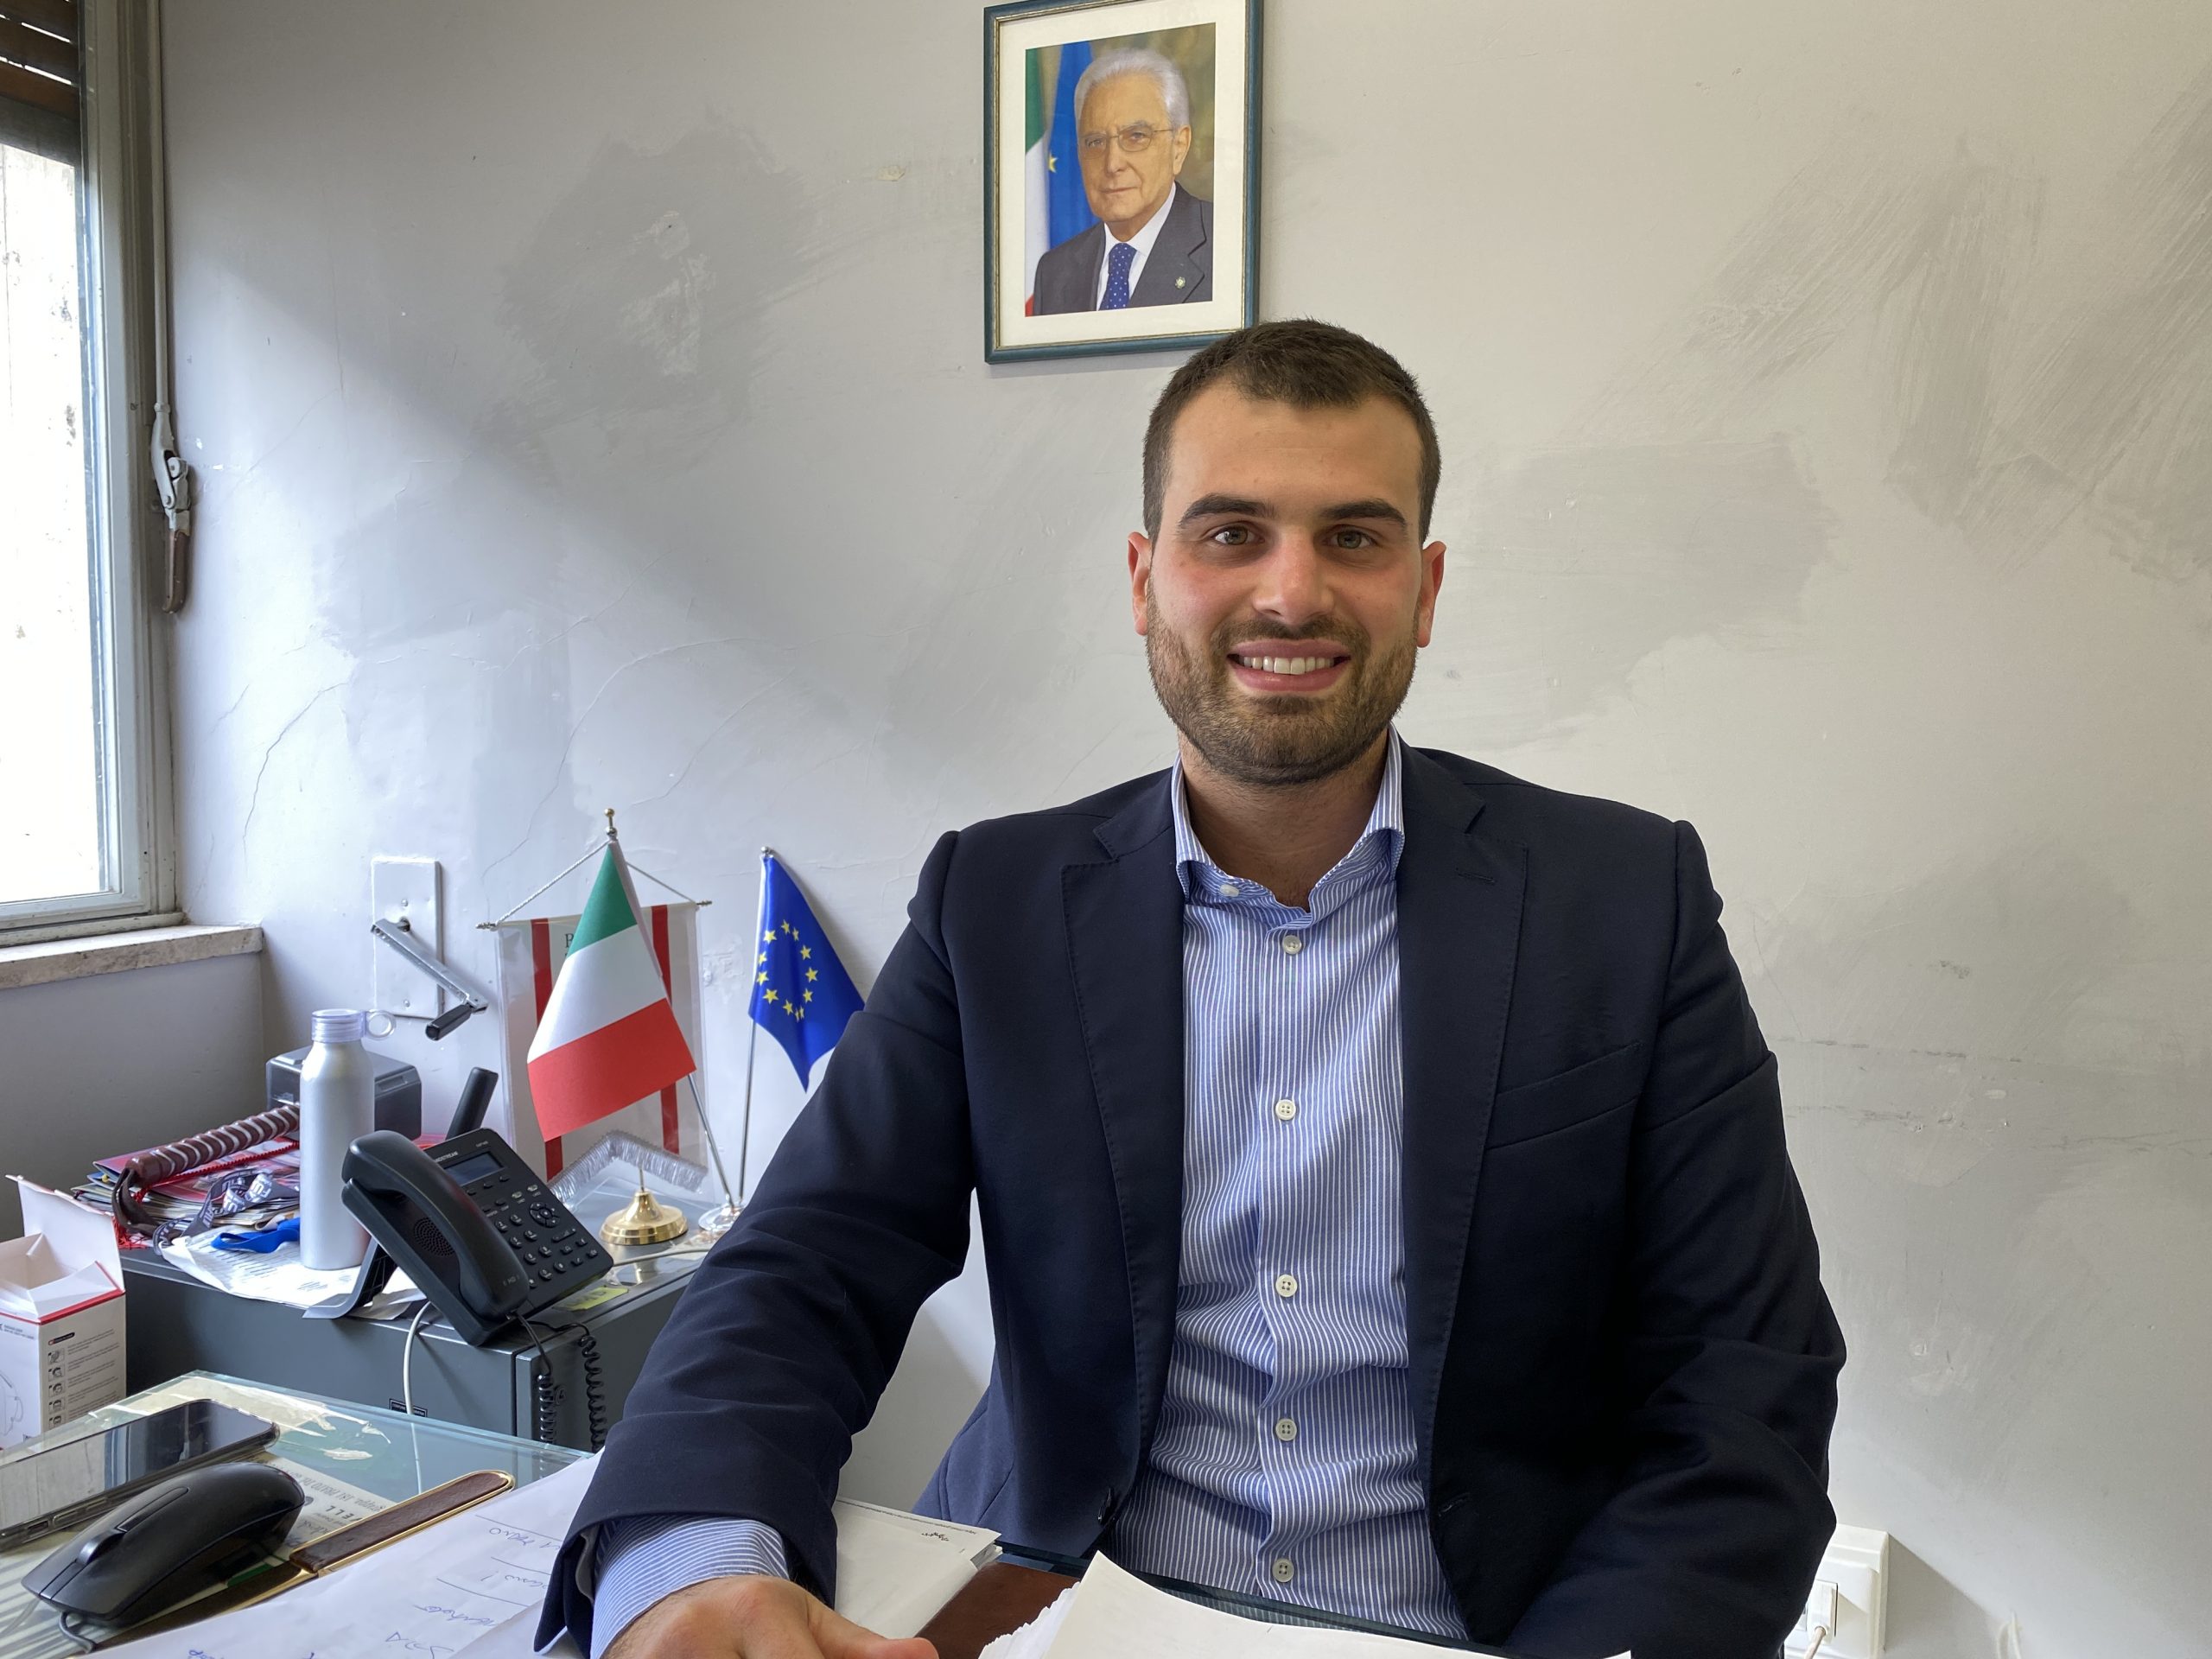 Conferenza sindaci, eletto il sindaco di Sovicille: il commento di Vagnoli